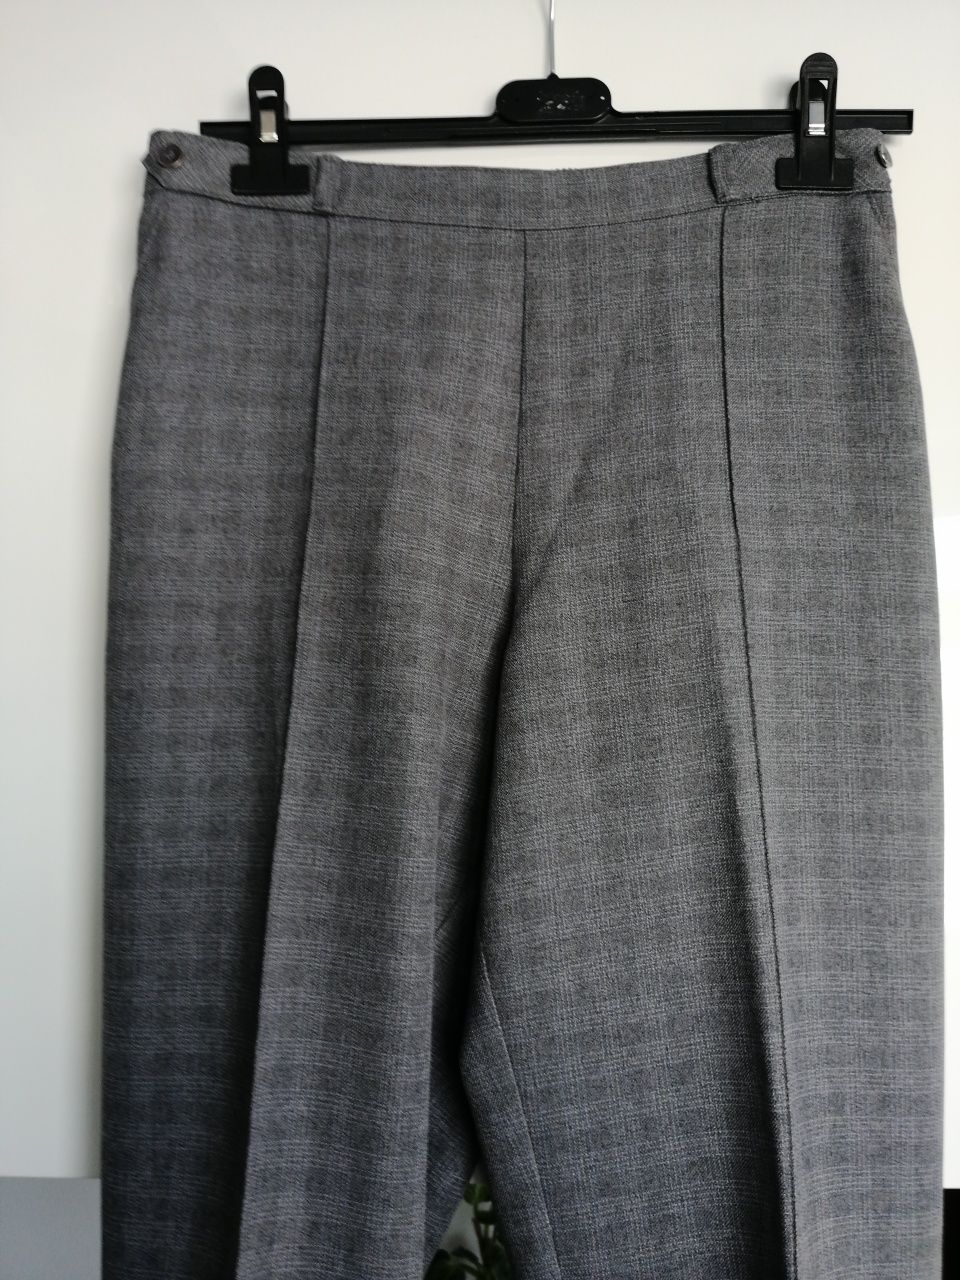 Spodnie damskie szare w kratke z kantką M /38 /10 M&S